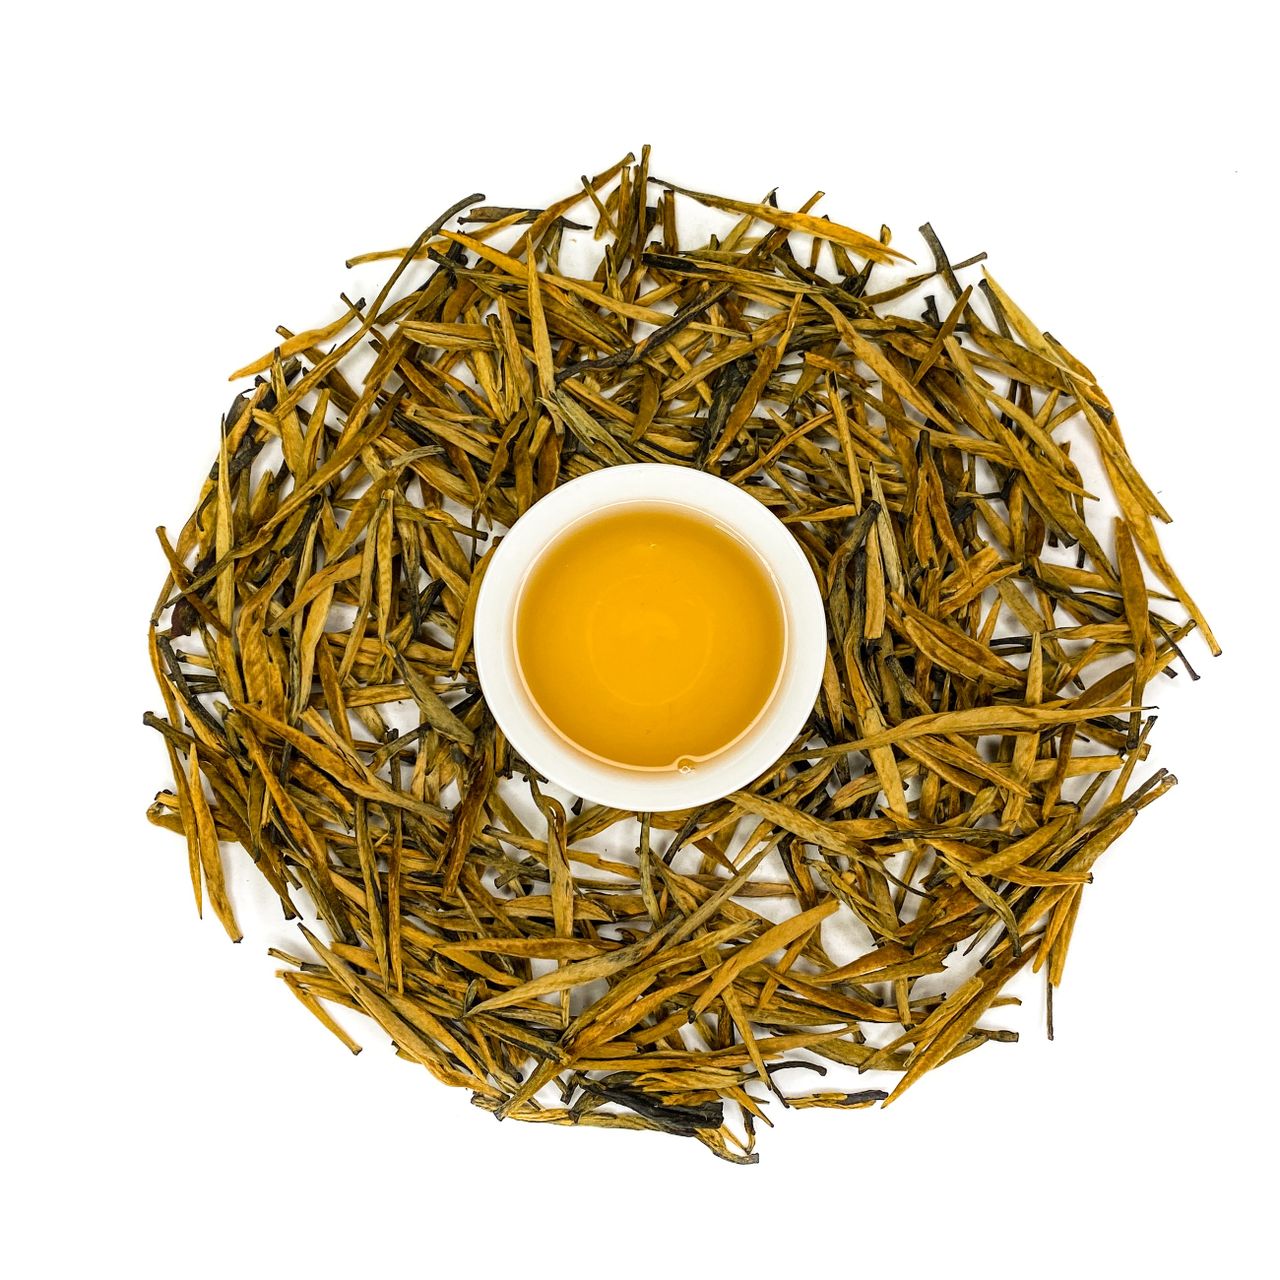 Дянь Хун золотые иглы. Золотые иглы чай. Китайский чай бодрящий. Бодрящий чай китайский в таблетках.